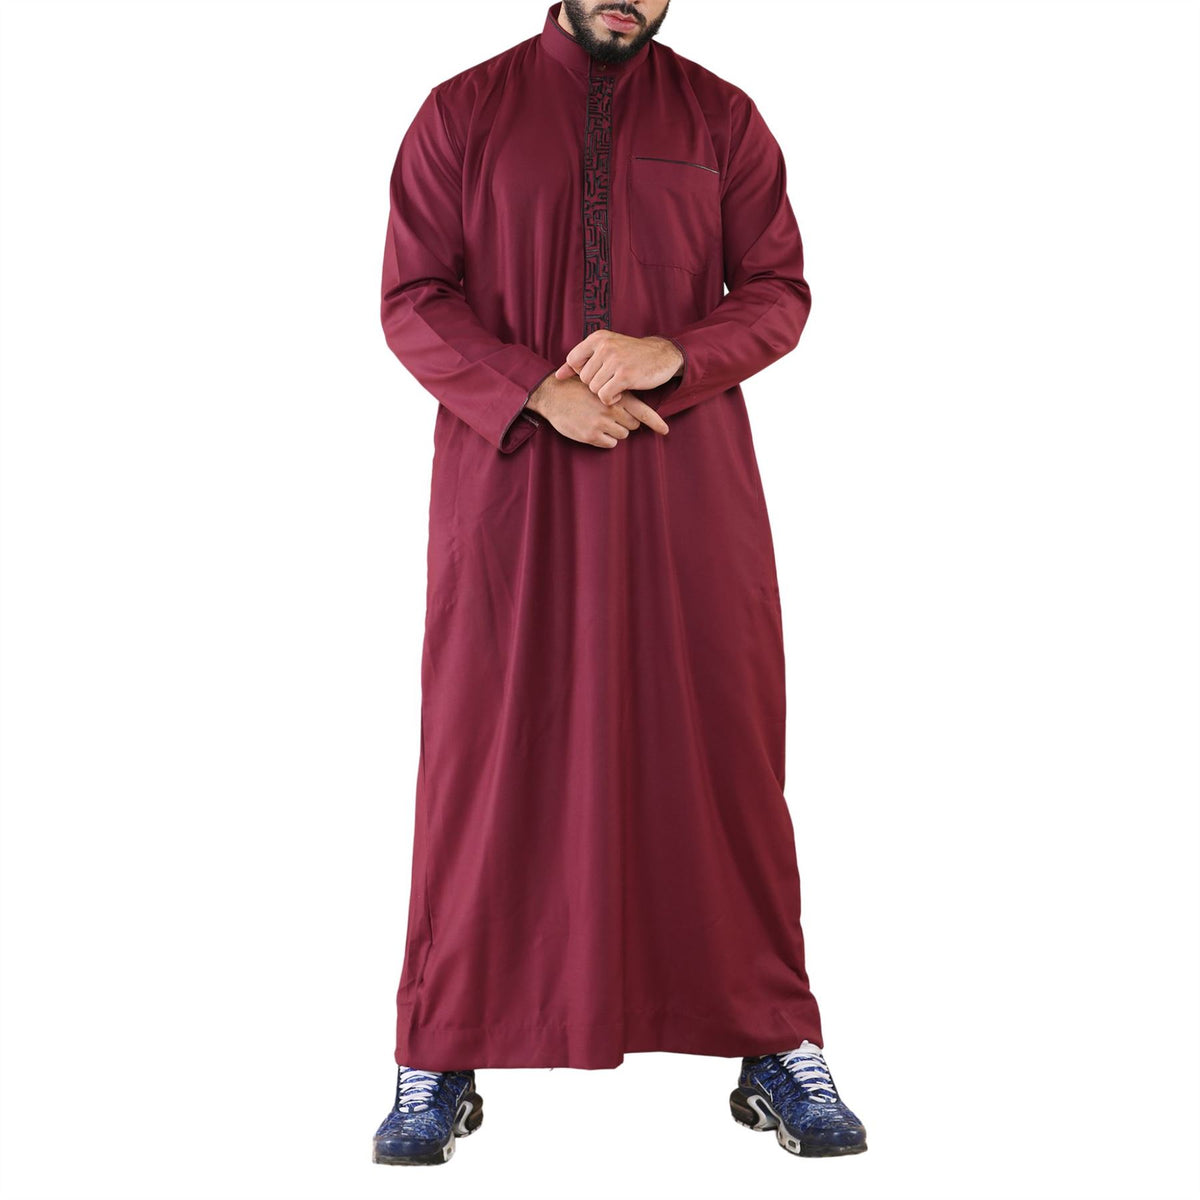 Dishdasha pour homme thobe jubba vêtement islamique musulman avec col indien en coton style kaftan saudi et broderies